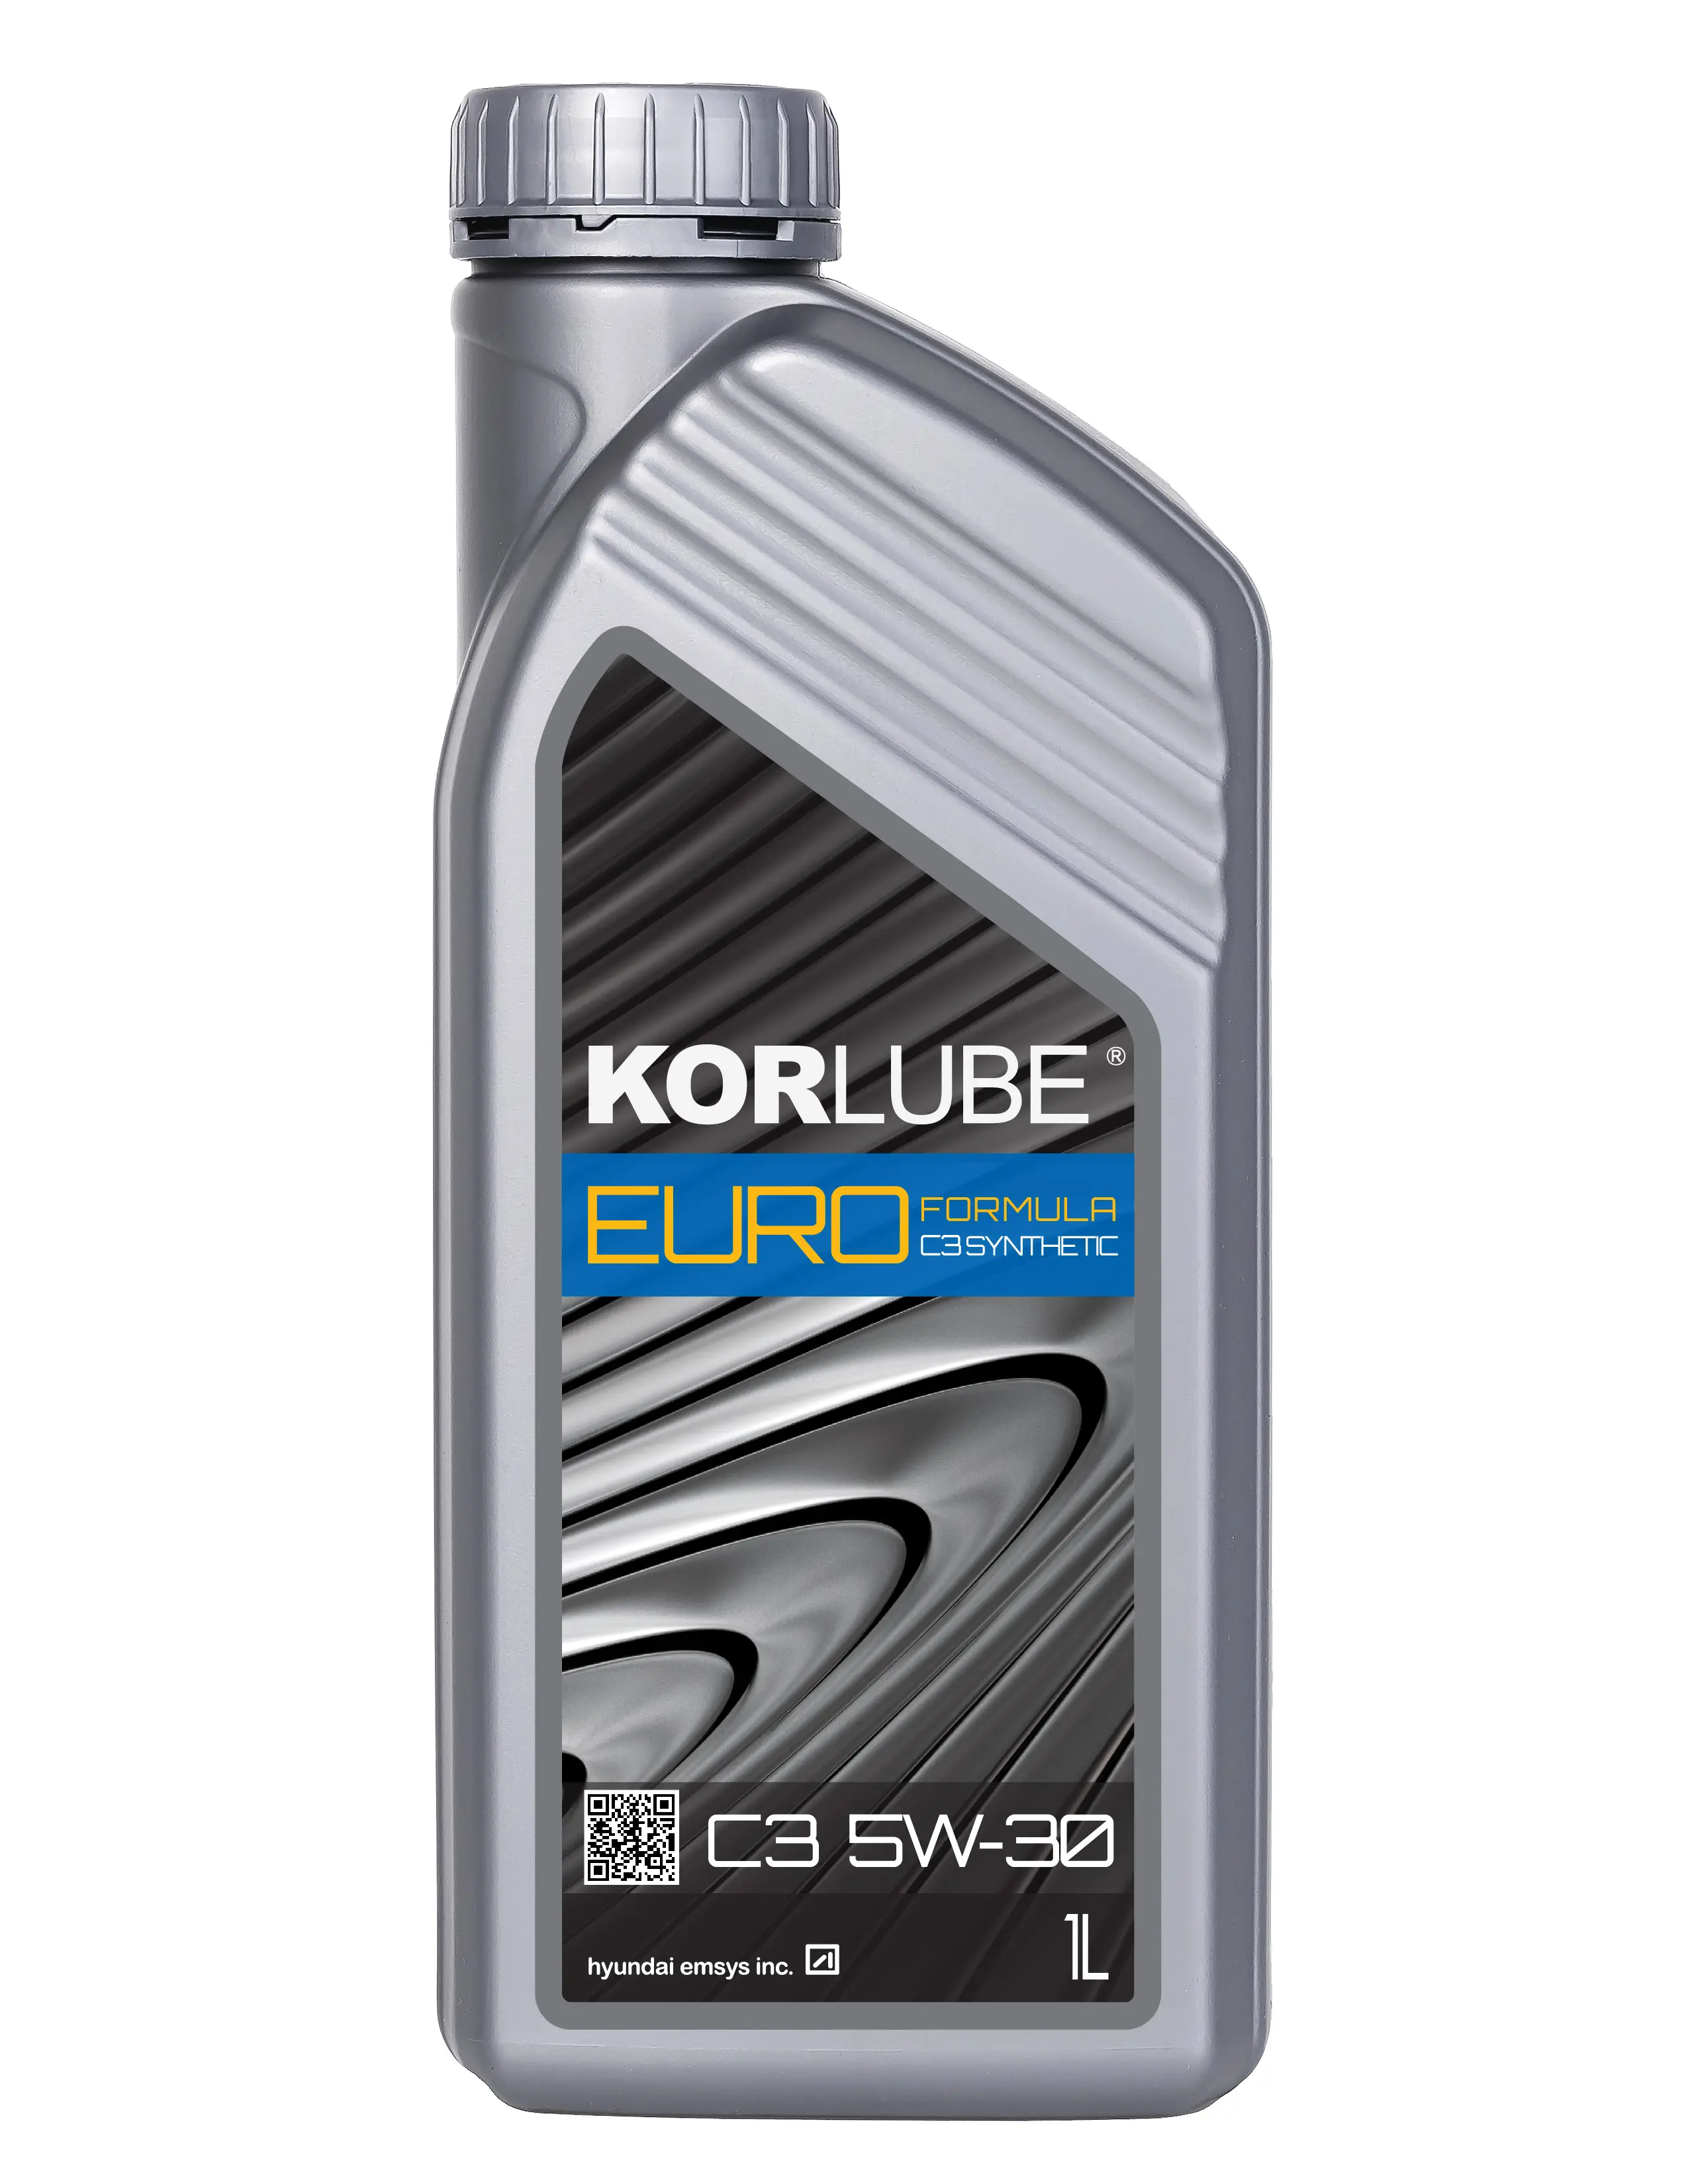 Kore yağları: KORLUBE EURO C3 motor yağı